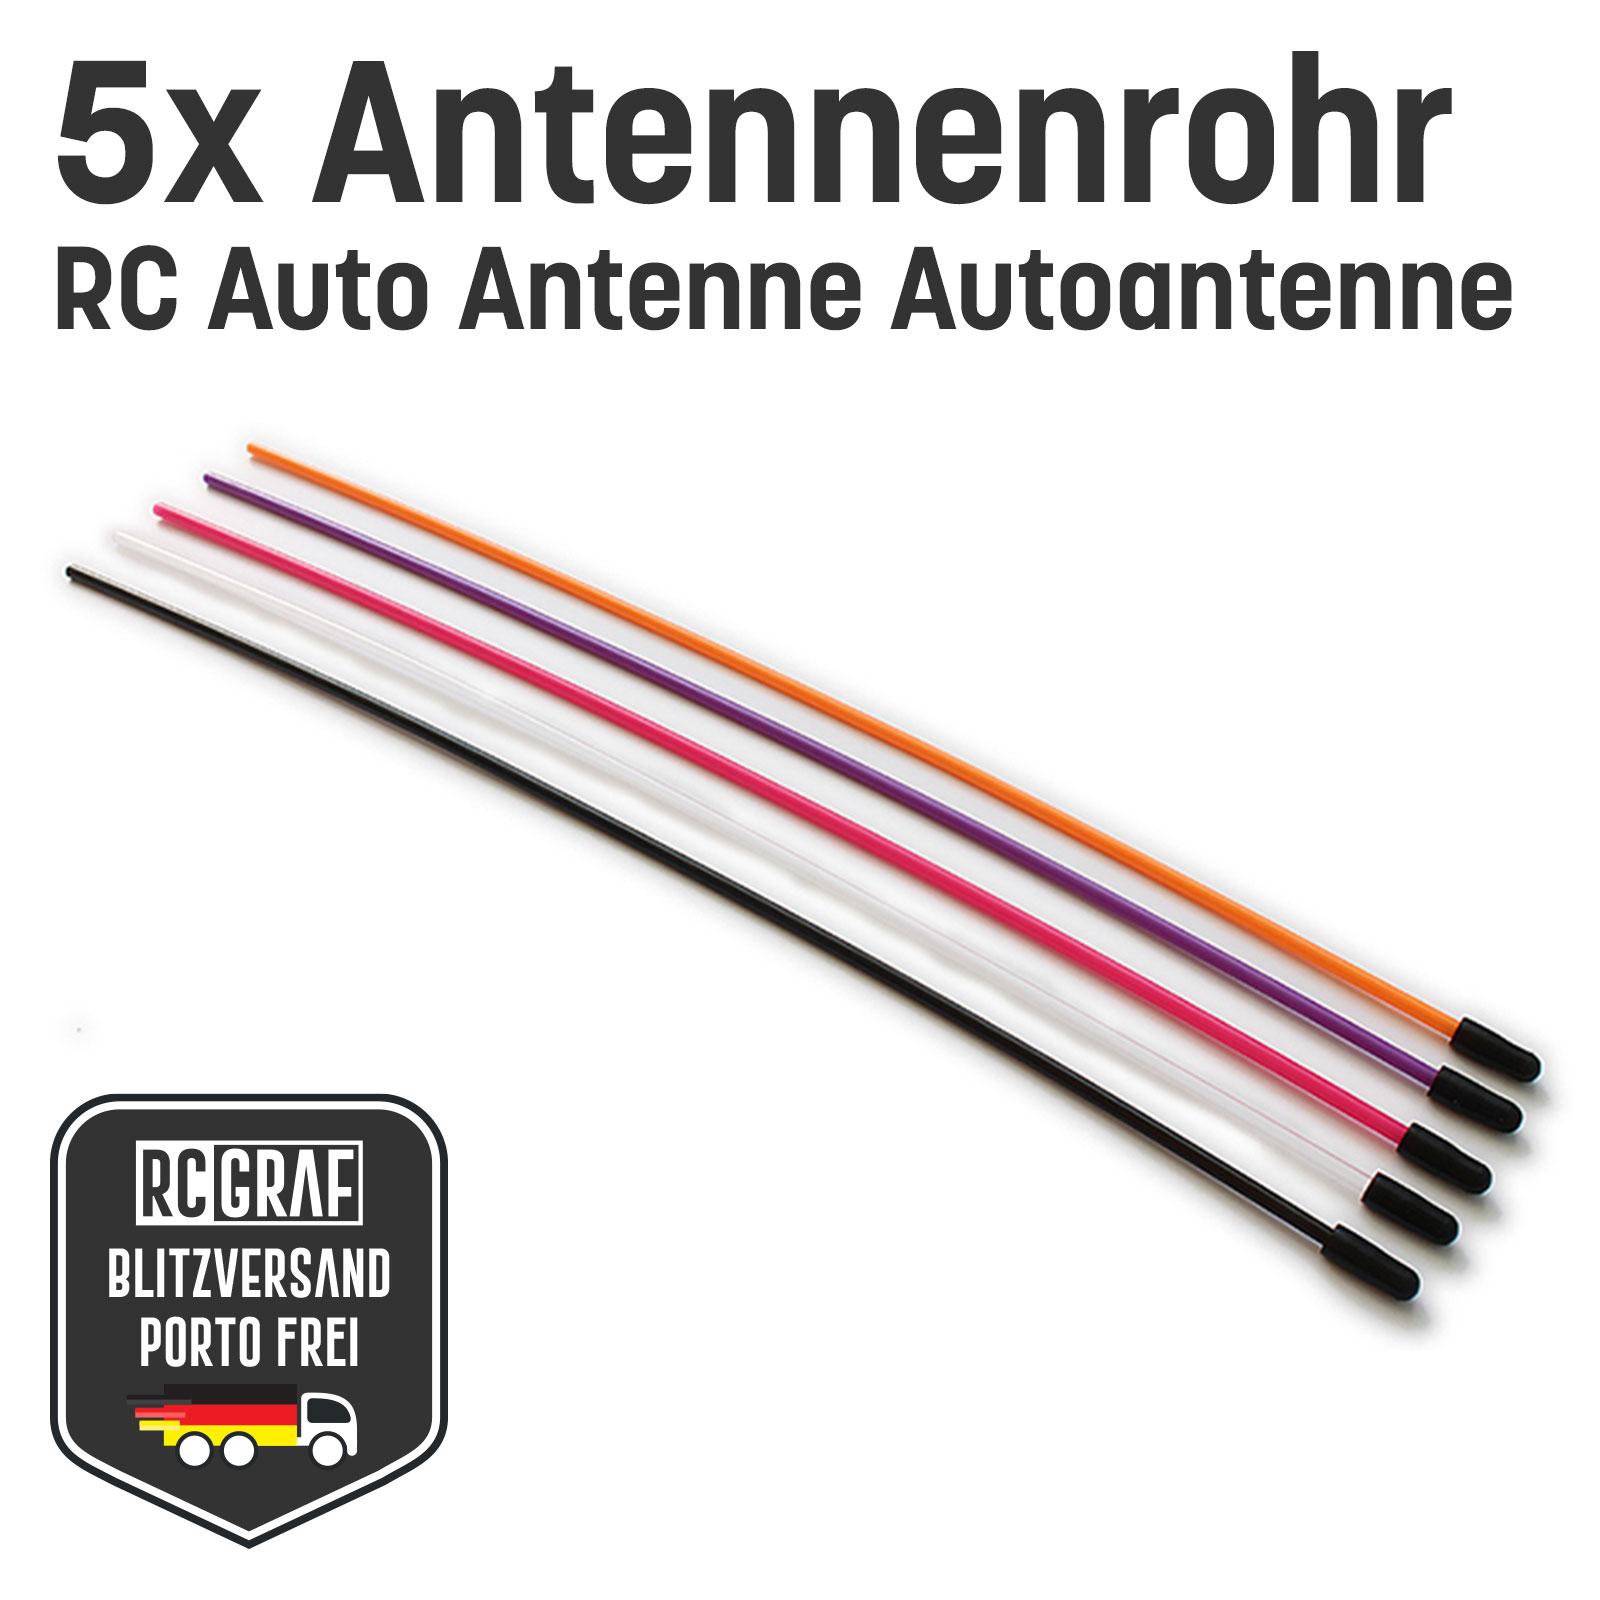 5x RC Antennenrohr Antennenröhrchen mit Kappe Antenne für Empfänger Schwarz, Orange, Pink, Transparent oder Lila